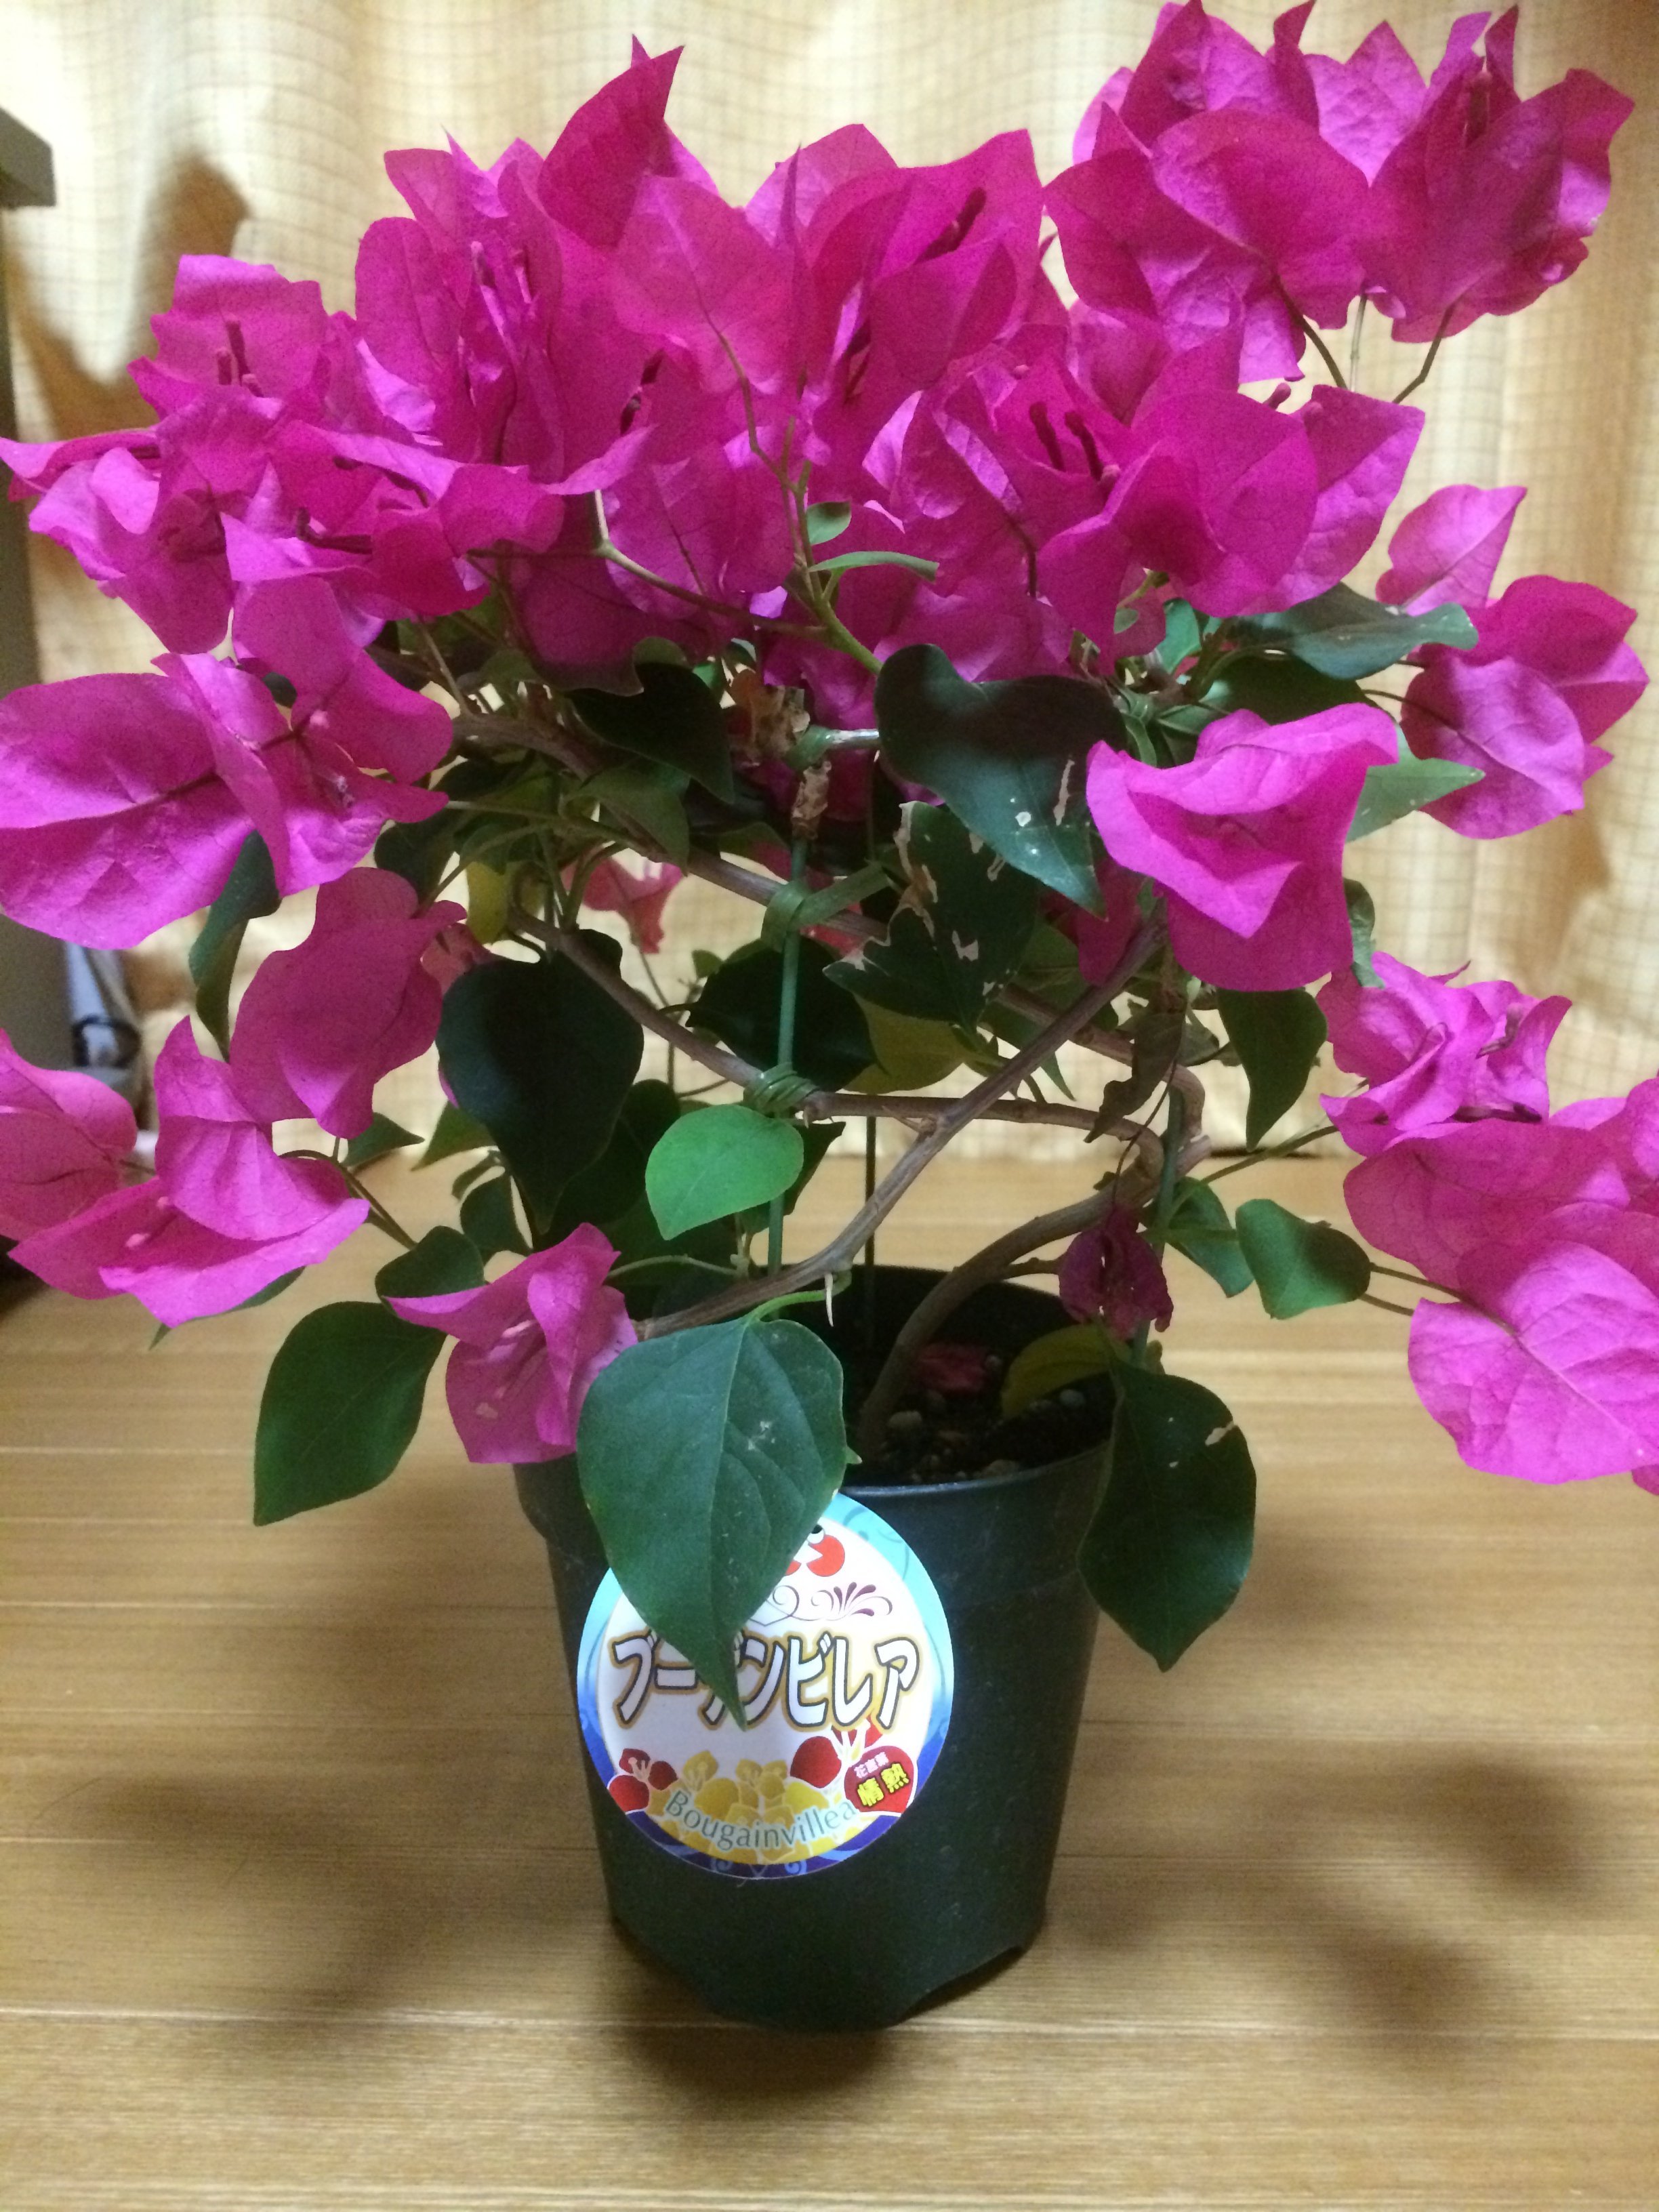 今日お花屋さんでブーゲンビリア(ブーゲンビレア)というお花に一目惚れ... - Yahoo!知恵袋